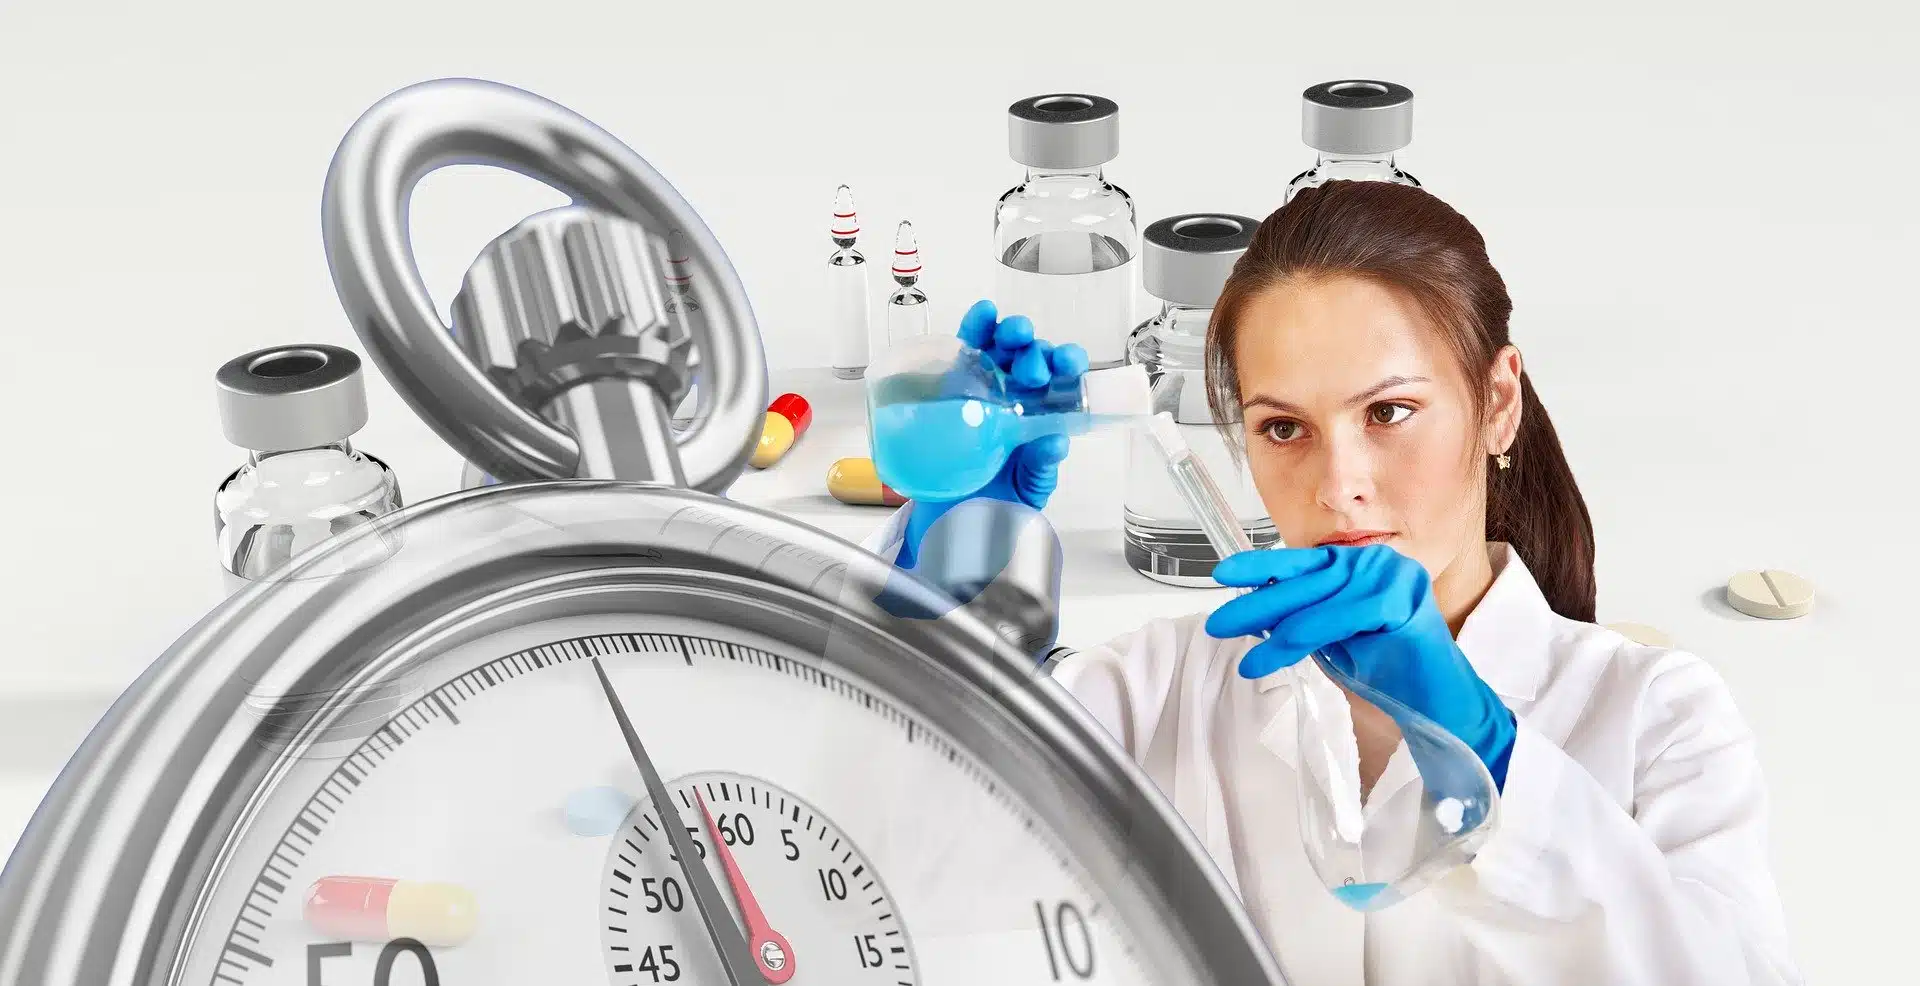 ricercatrice in un laboratorio sperimentale e grande orologio stante a significare la corsa contro il tempo per produrre un vaccino